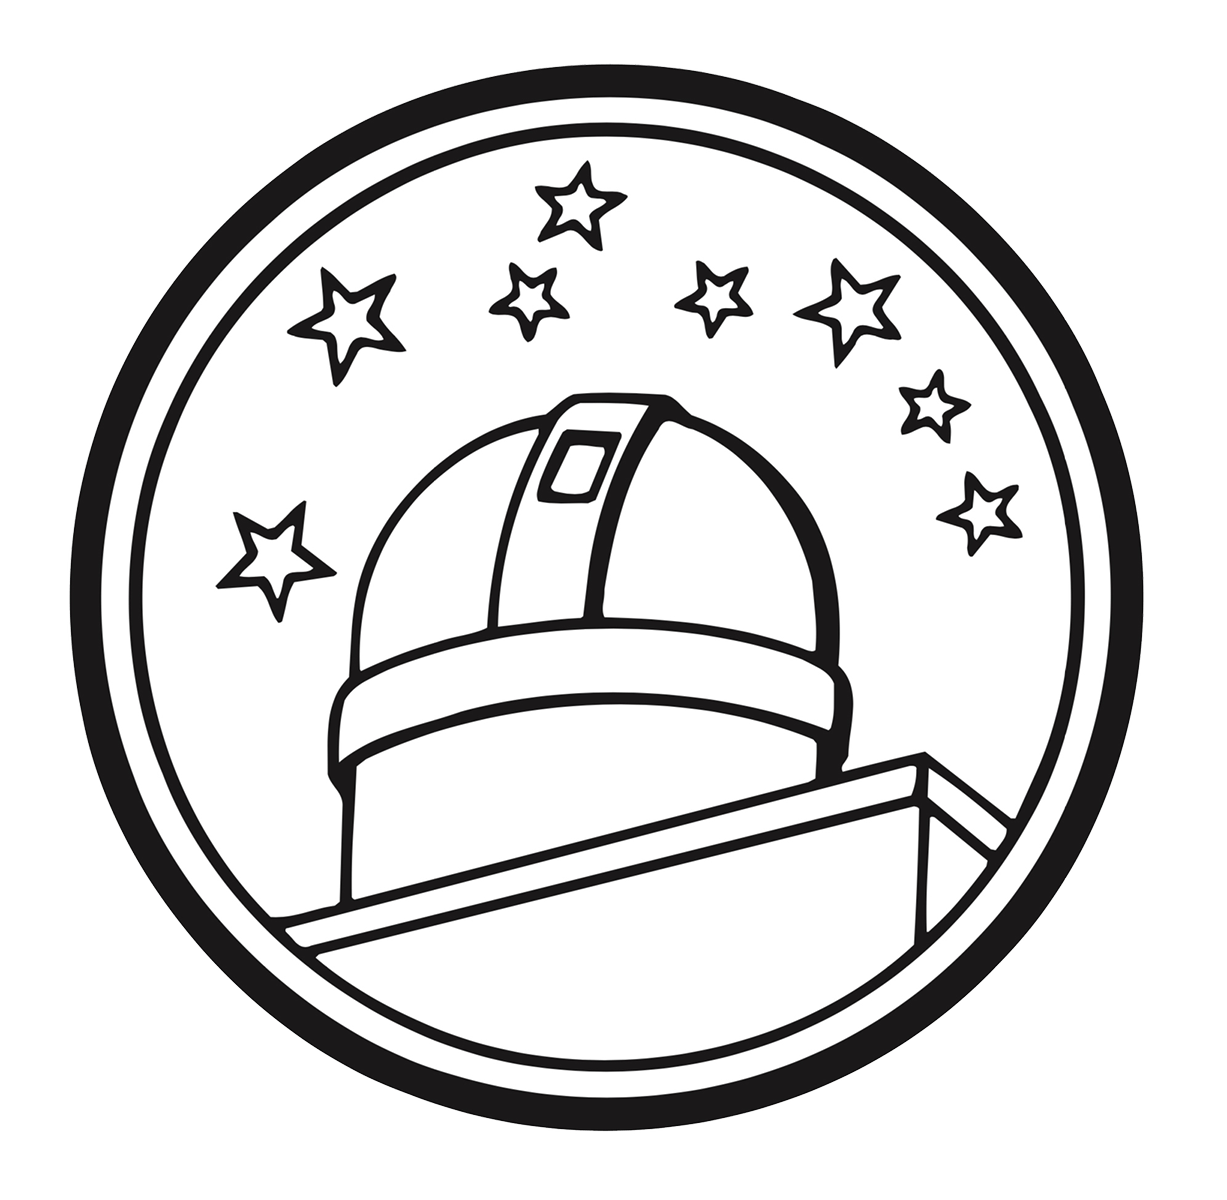 星座系列徽章刻劃出日內瓦天文台的圓頂